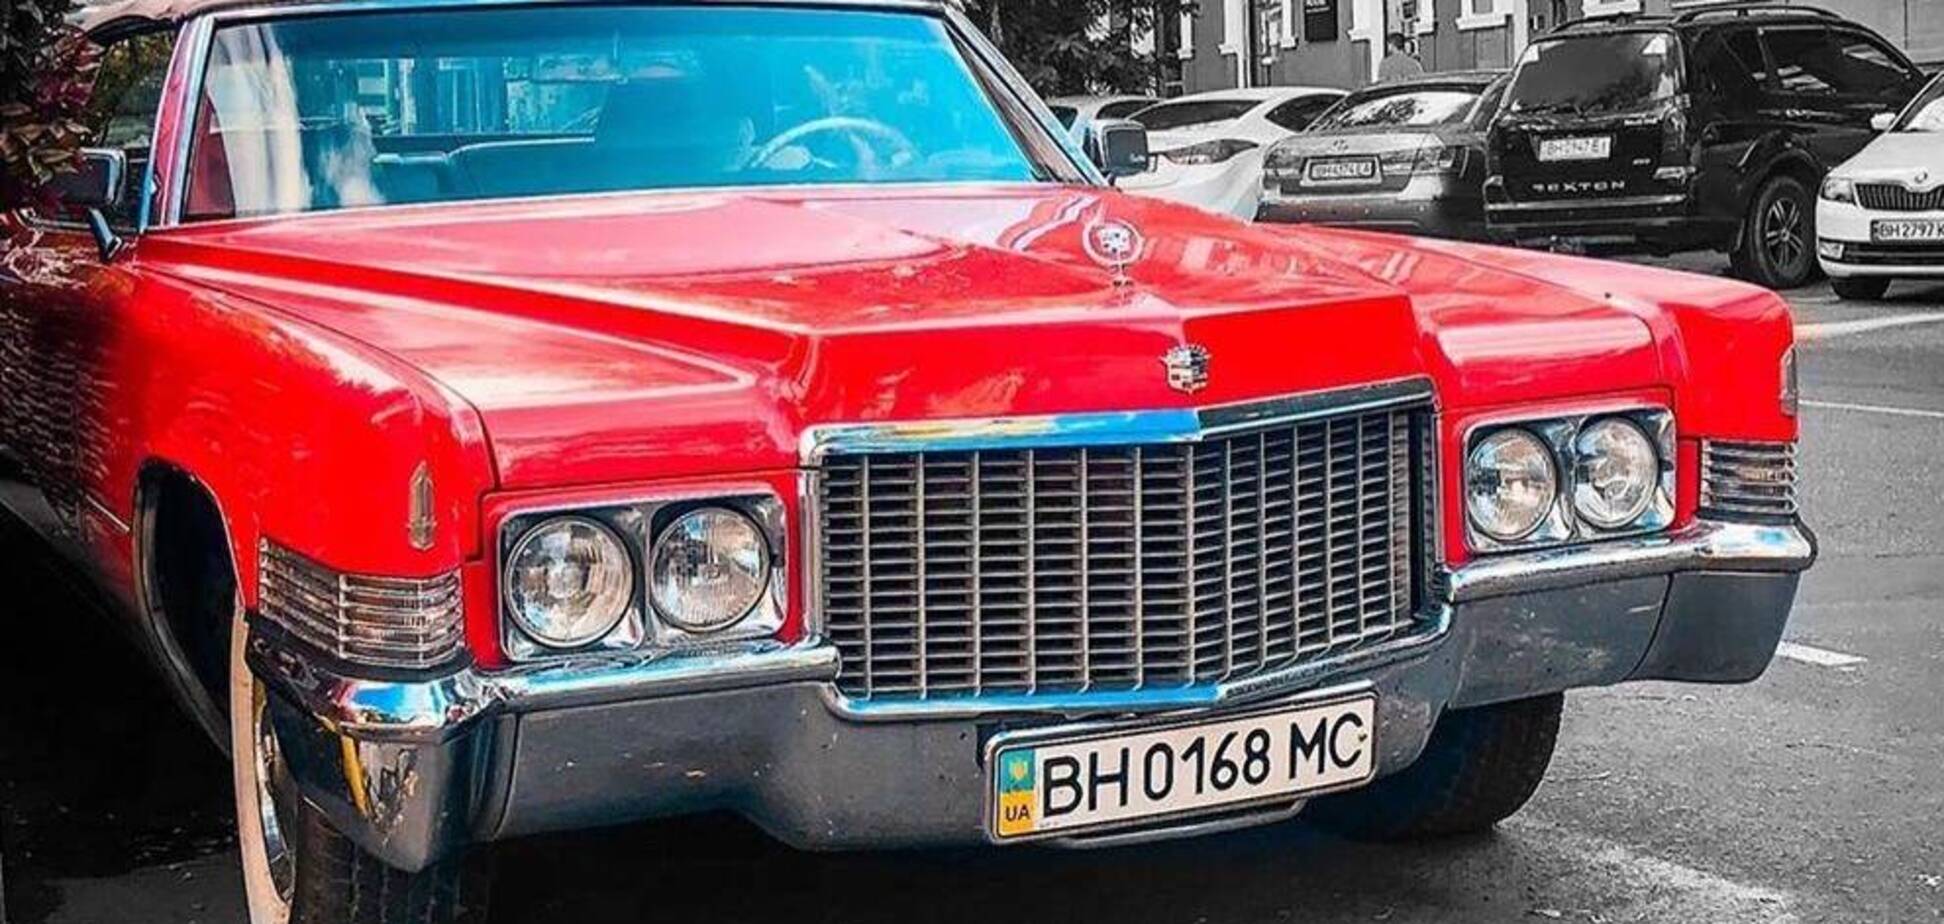 Неймовірний Cadillac віком 50 років знайшли в Україні. Фото: instagram.com/topcars_u.a